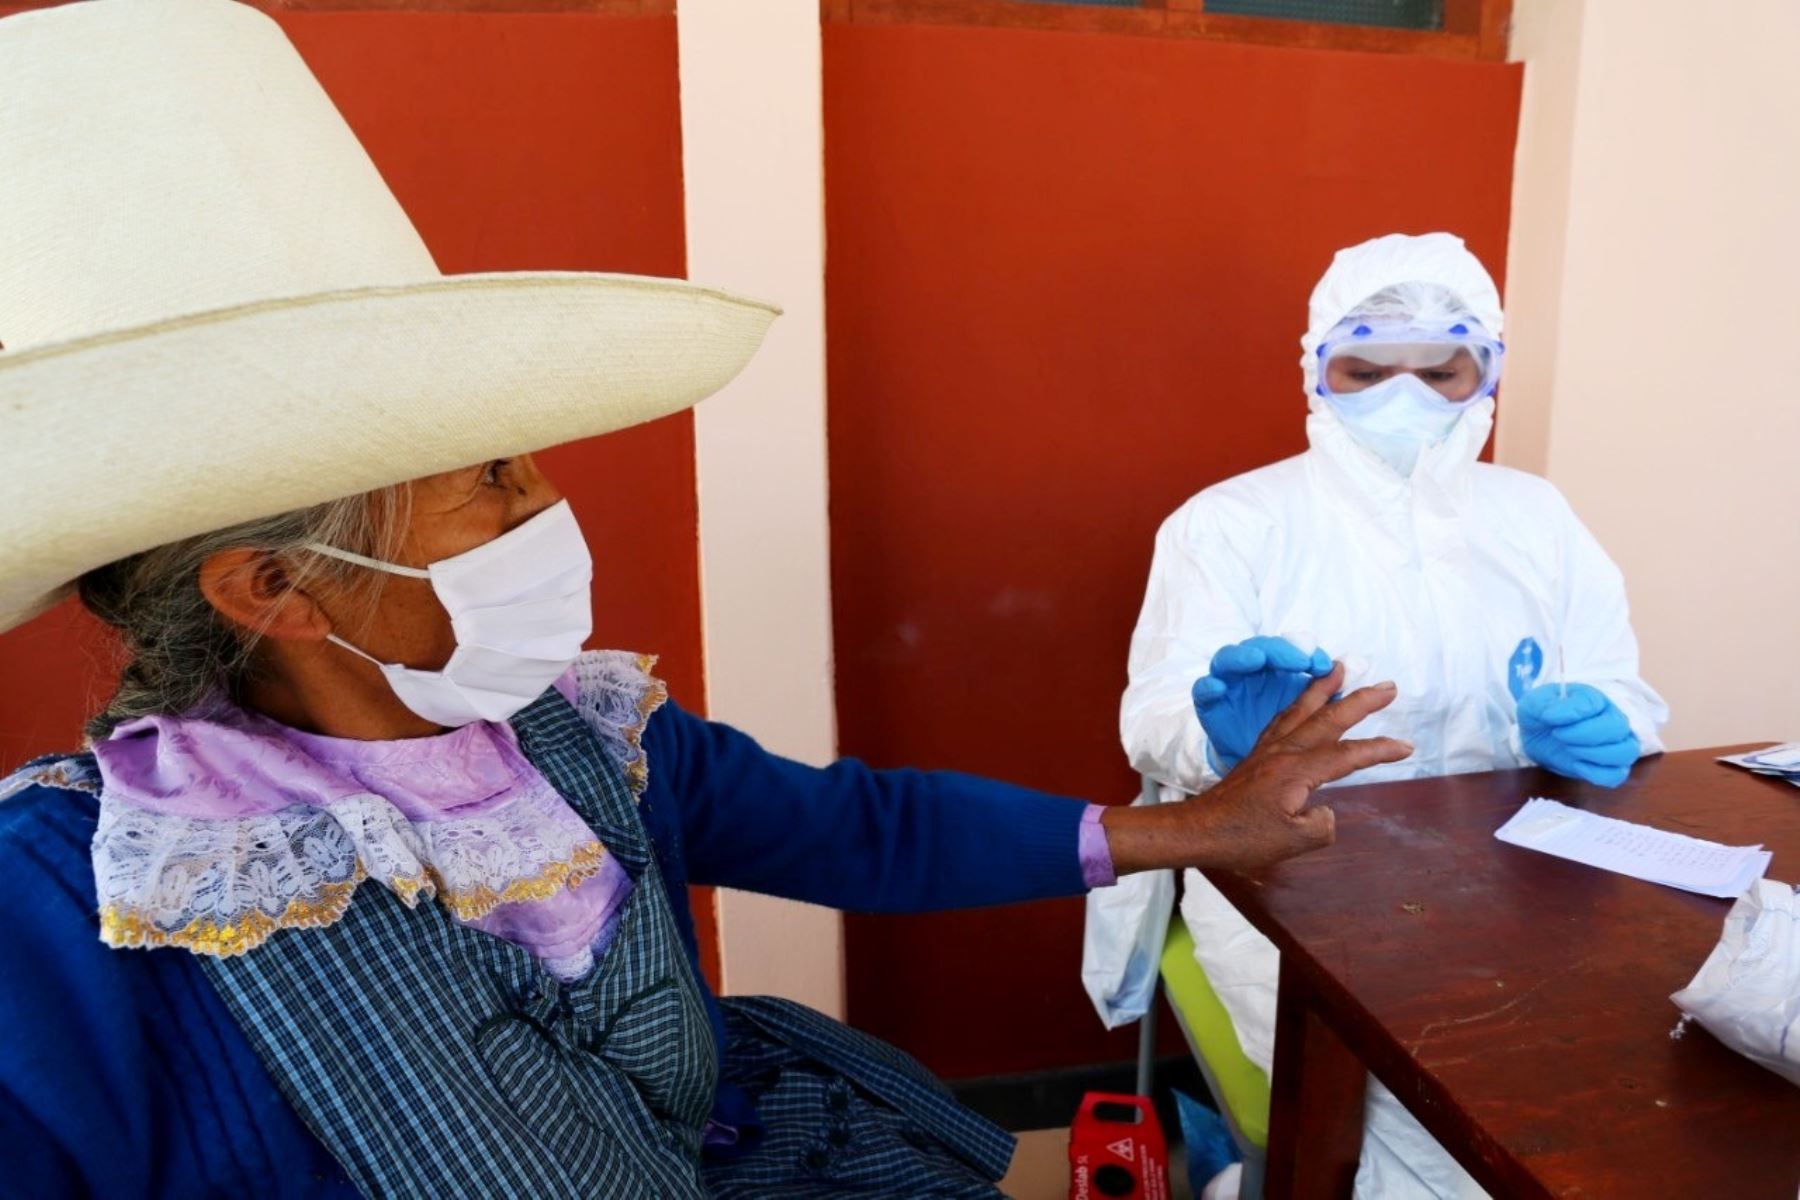 Empresa minera Southern dona 5,000 pruebas rápidas a la Diresa Cajamarca para detectar casos de coronavirus (covid-19), en especial en la zona de influencia del proyecto Michiquillay. Foto: ANDINA/Difusión